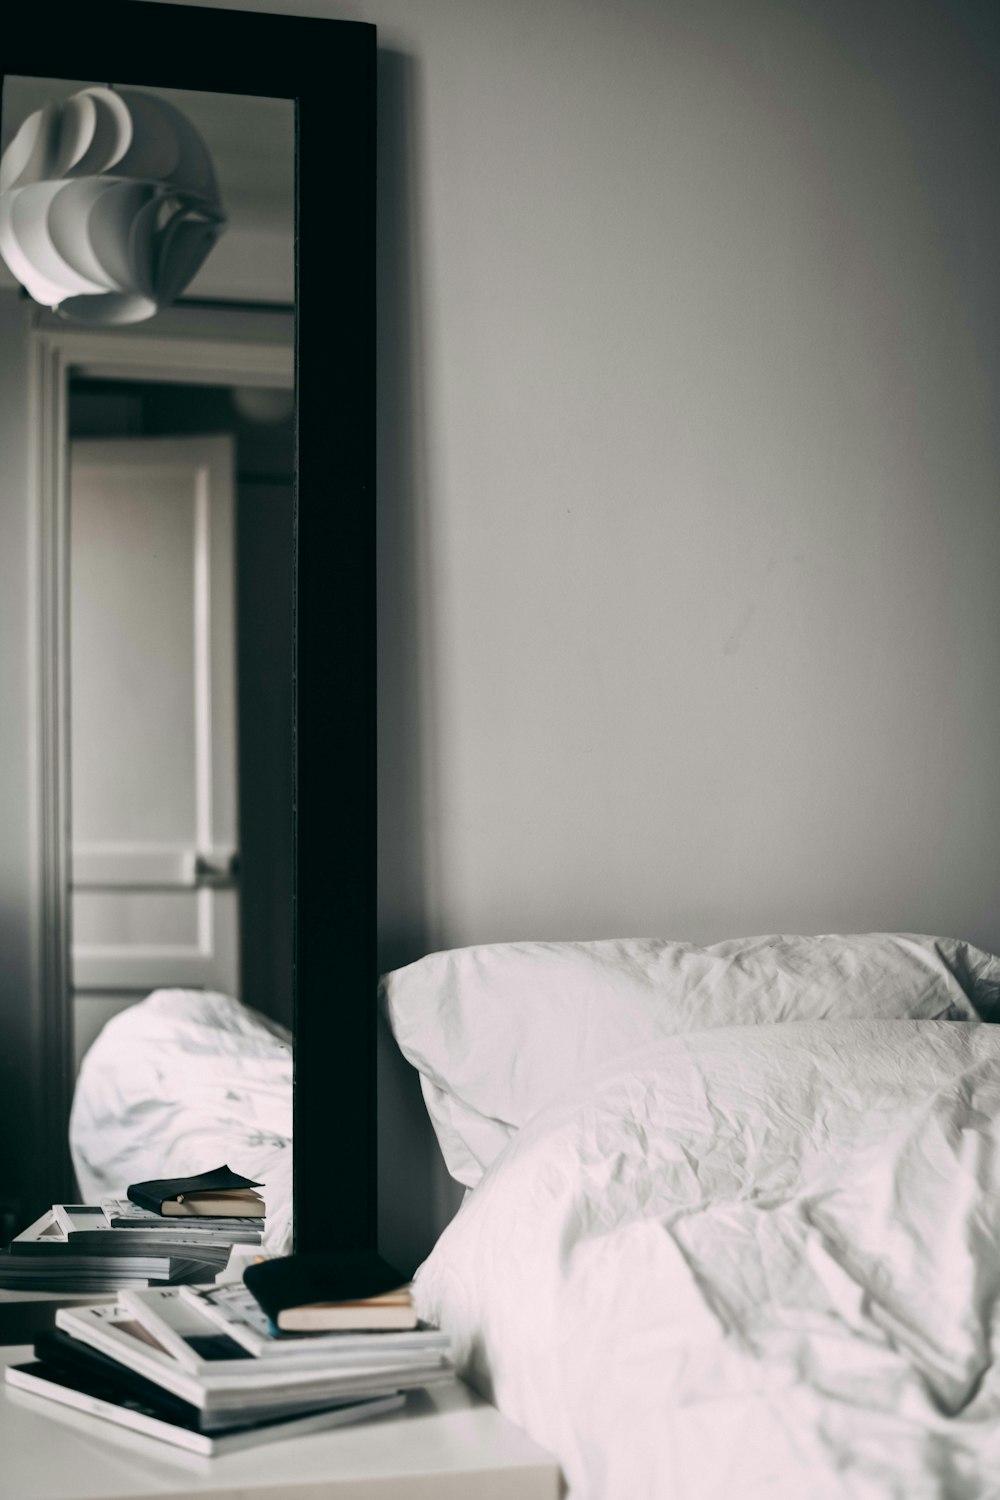 Rectangular Black Wooden Framed Mirror Inside Bedroom Photo